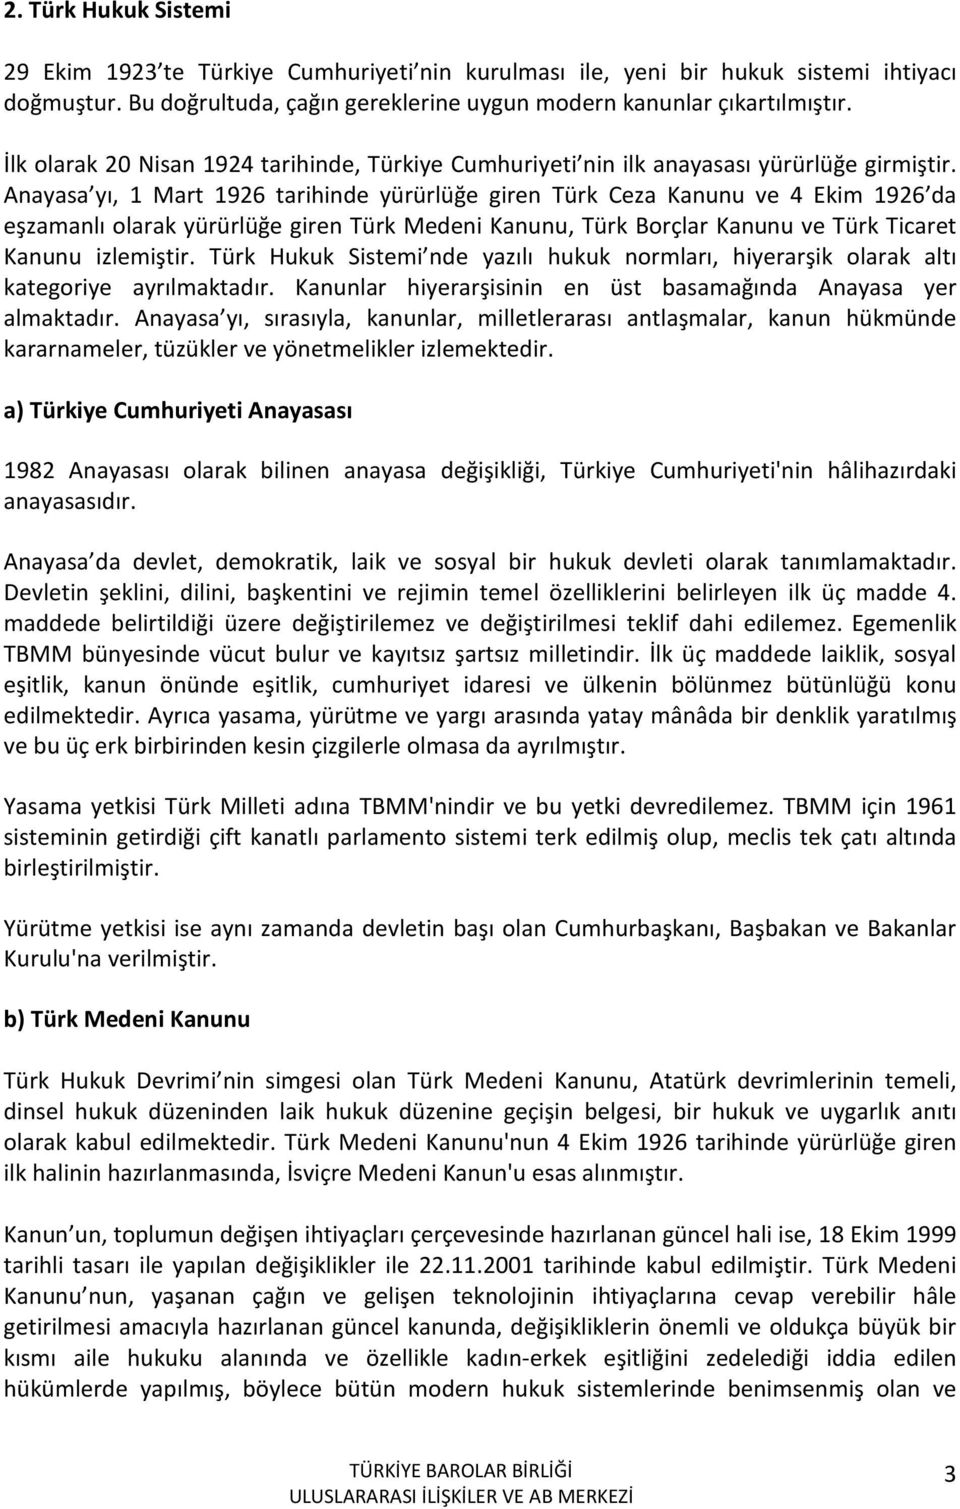 Anayasa yı, 1 Mart 1926 tarihinde yürürlüğe giren Türk Ceza Kanunu ve 4 Ekim 1926 da eşzamanlı olarak yürürlüğe giren Türk Medeni Kanunu, Türk Borçlar Kanunu ve Türk Ticaret Kanunu izlemiştir.